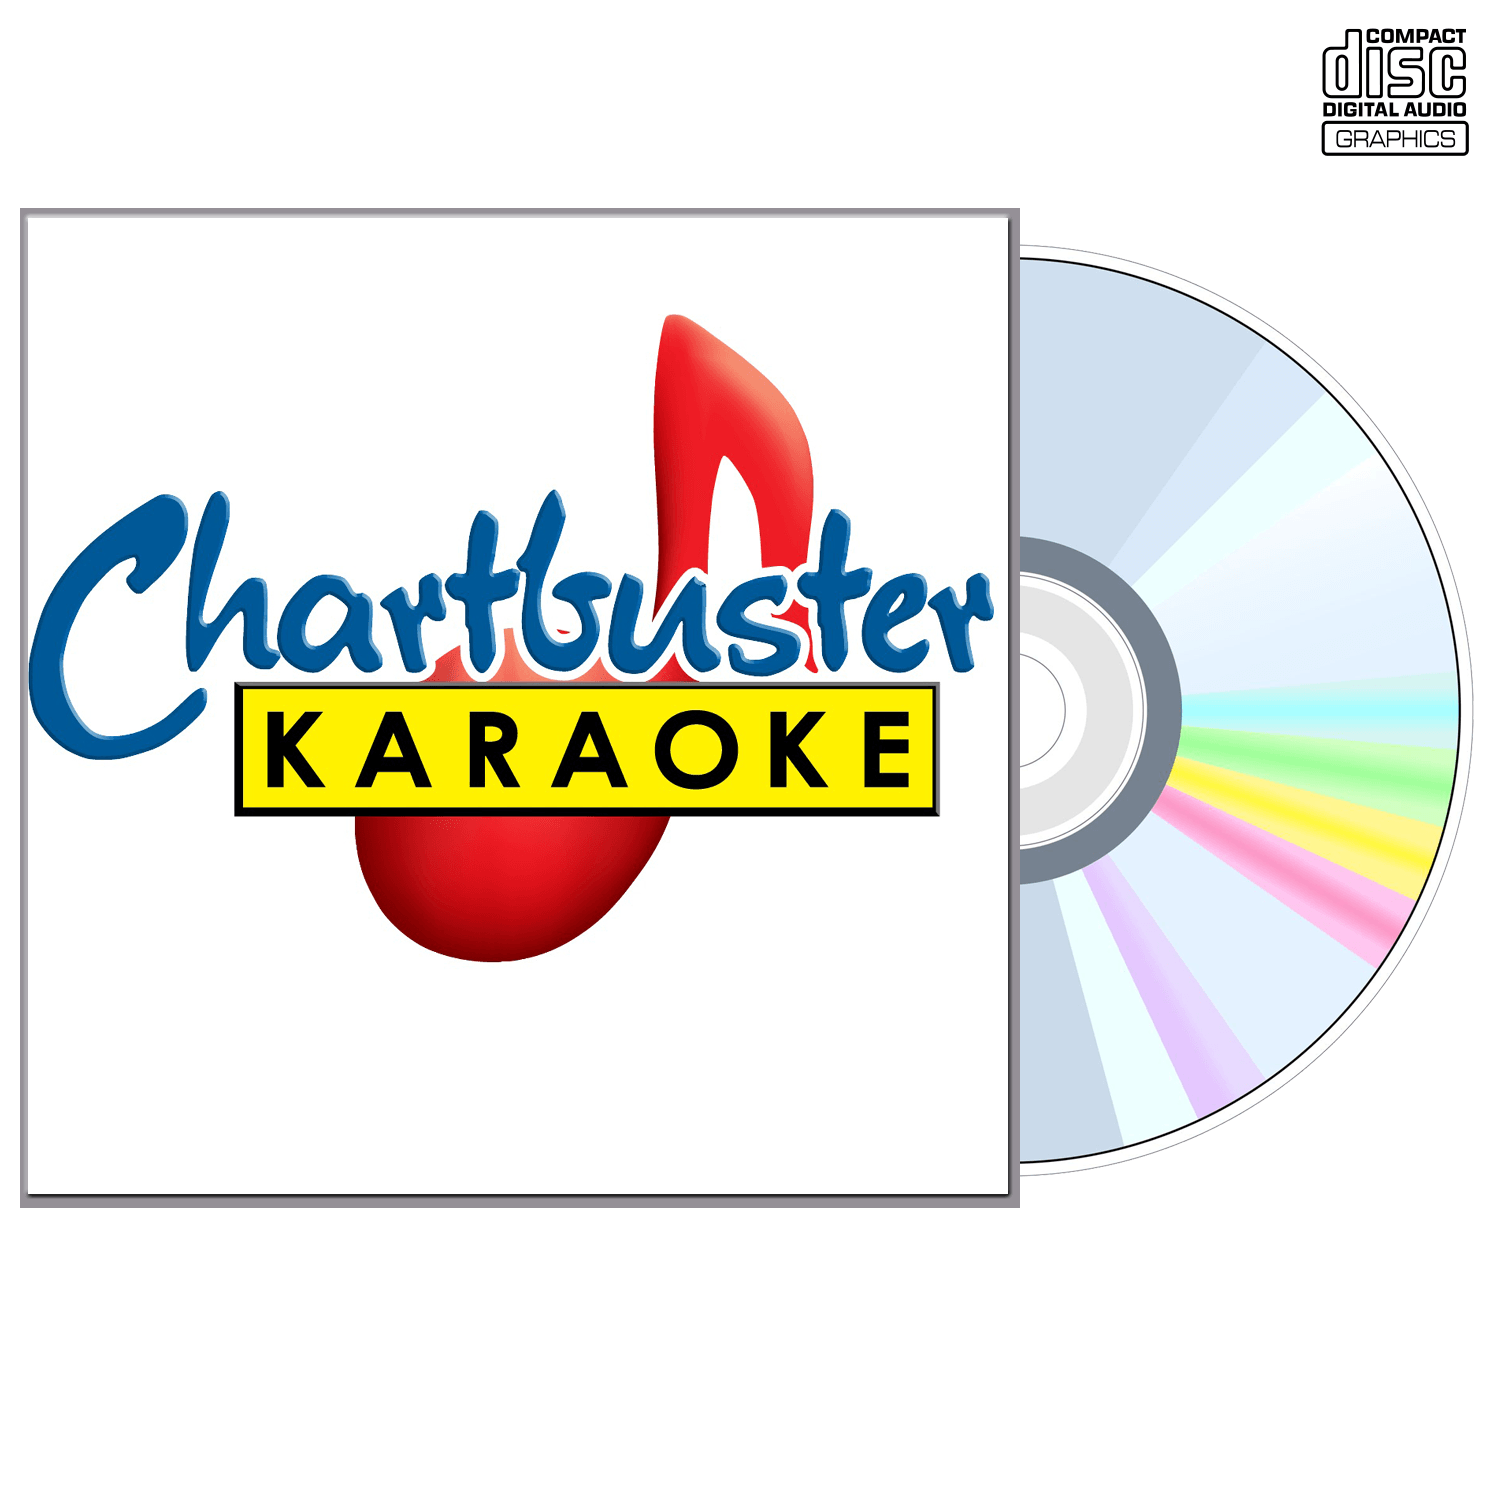 Shedaisy - CD+G - Chartbuster Karaoke - Karaoke Home Entertainment